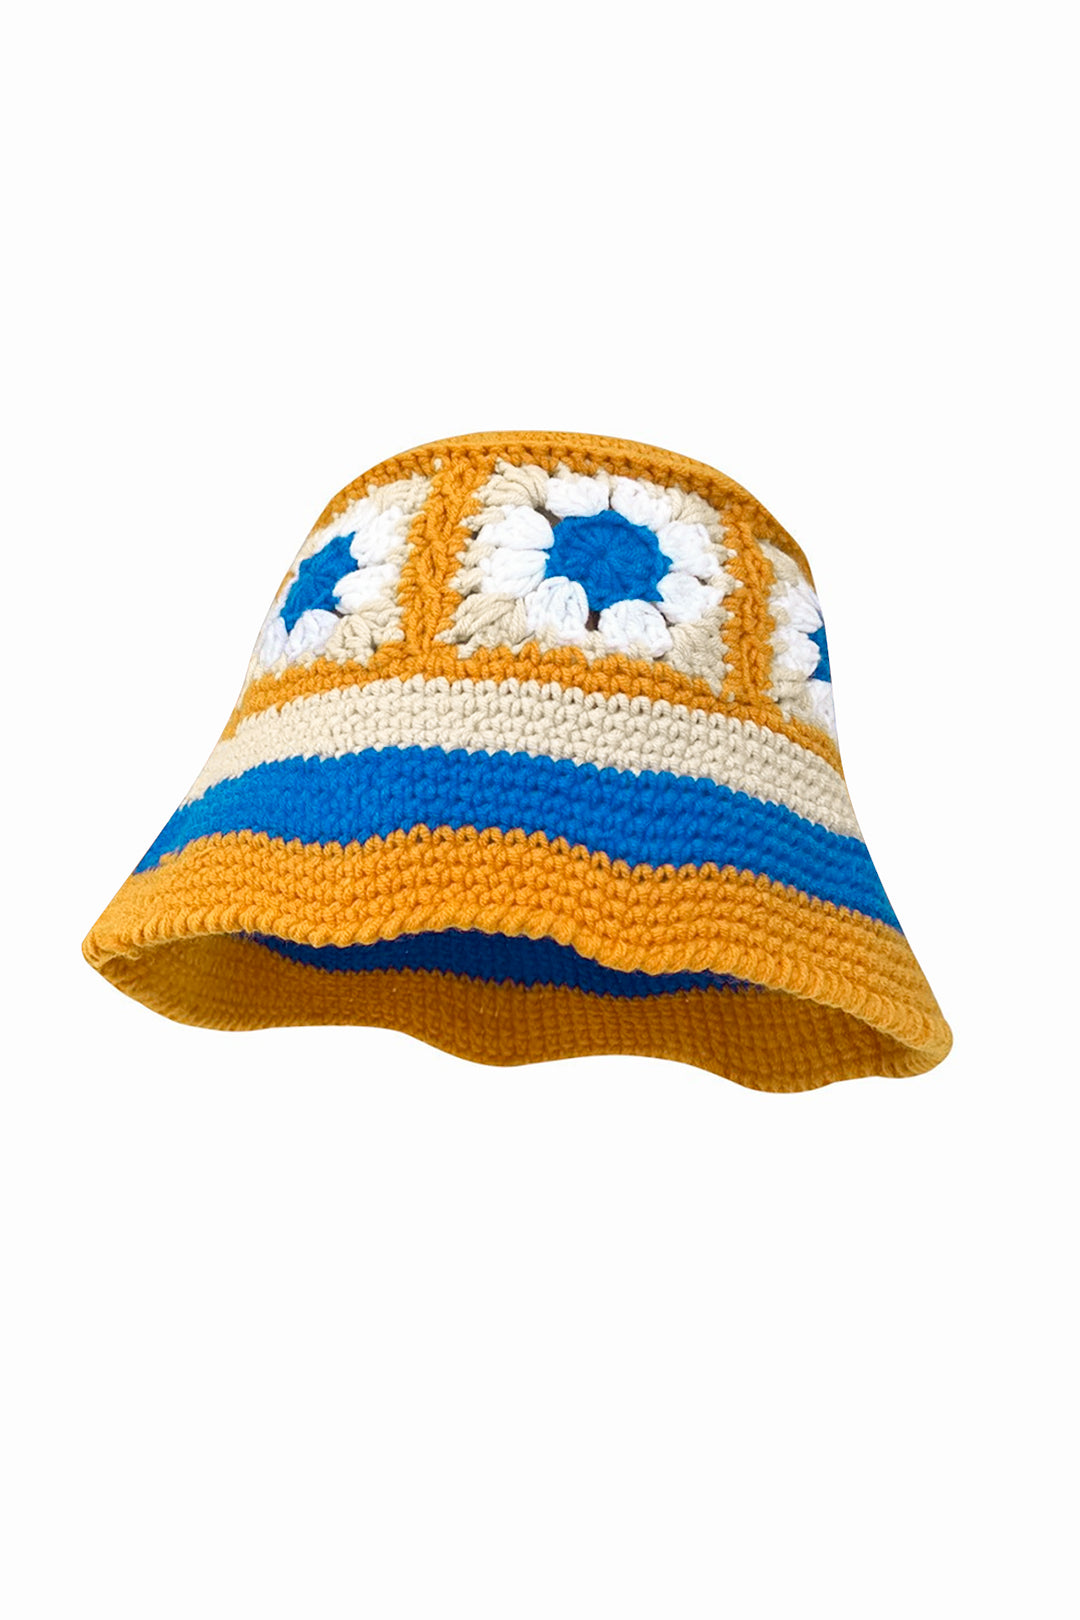 Contrast Crochet Knit Fisherman Hat